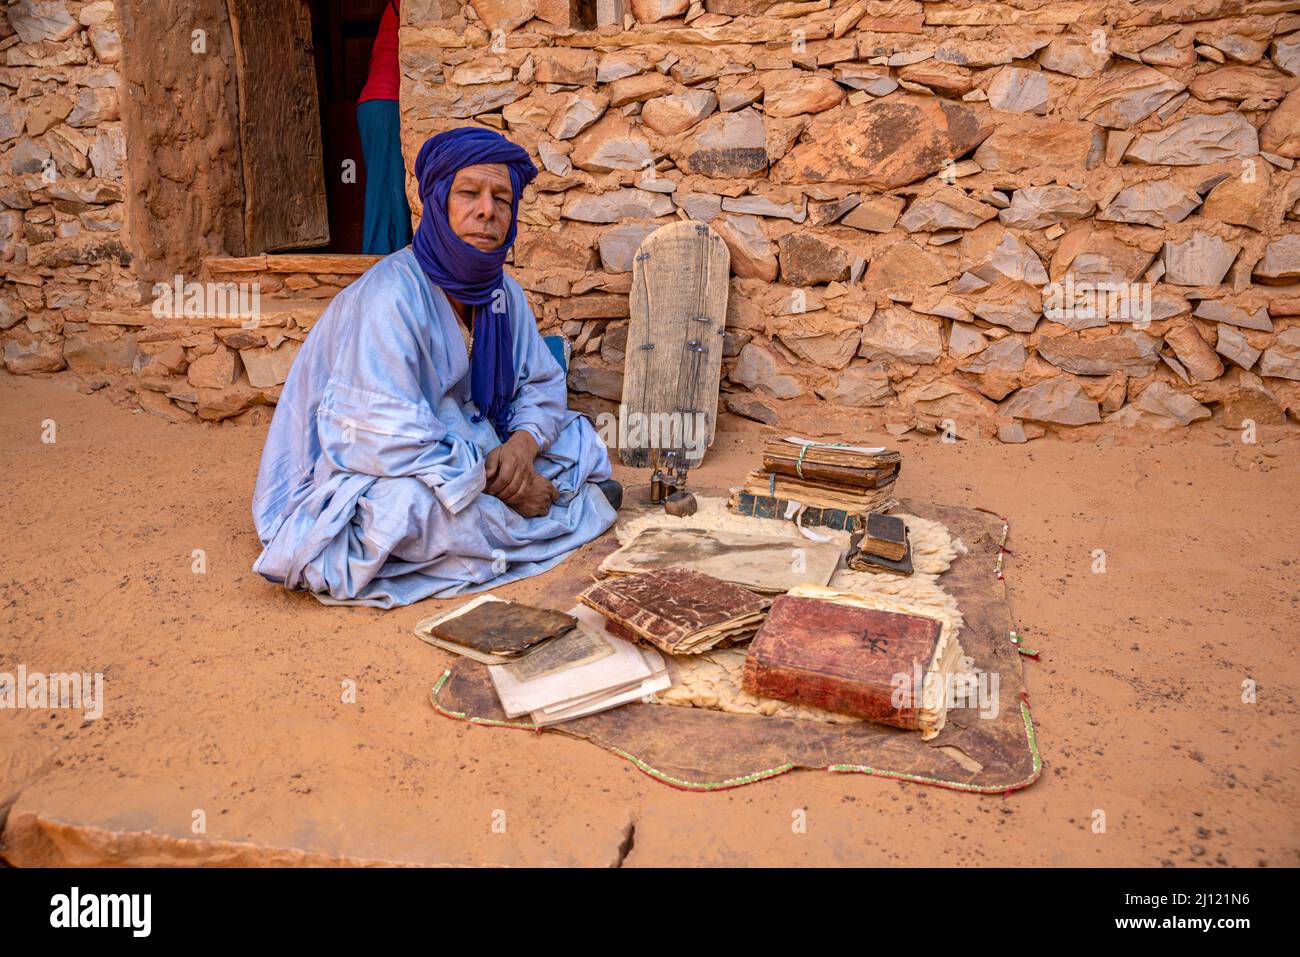 Homme mauritanien avec le boubou bleu traditionnel et le turban et de vieux livres islamiques dans une ancienne bibliothèque, Chinguetti, Mauritanie Banque D'Images